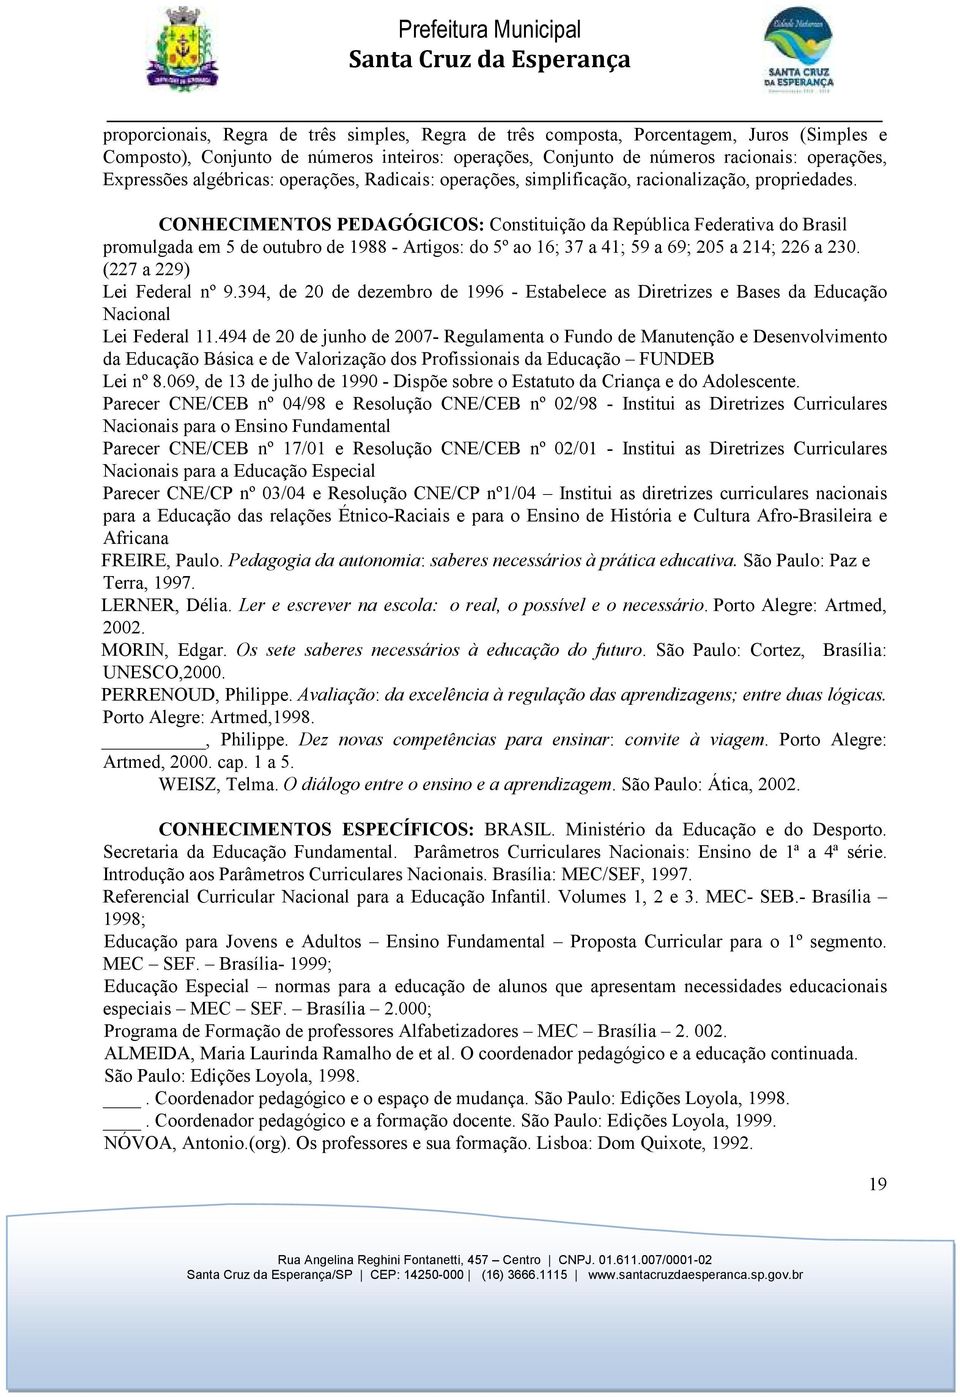 CONHECIMENTOS PEDAGÓGICOS: Constituição da República Federativa do Brasil promulgada em 5 de outubro de 1988 - Artigos: do 5º ao 16; 37 a 41; 59 a 69; 205 a 214; 226 a 230.